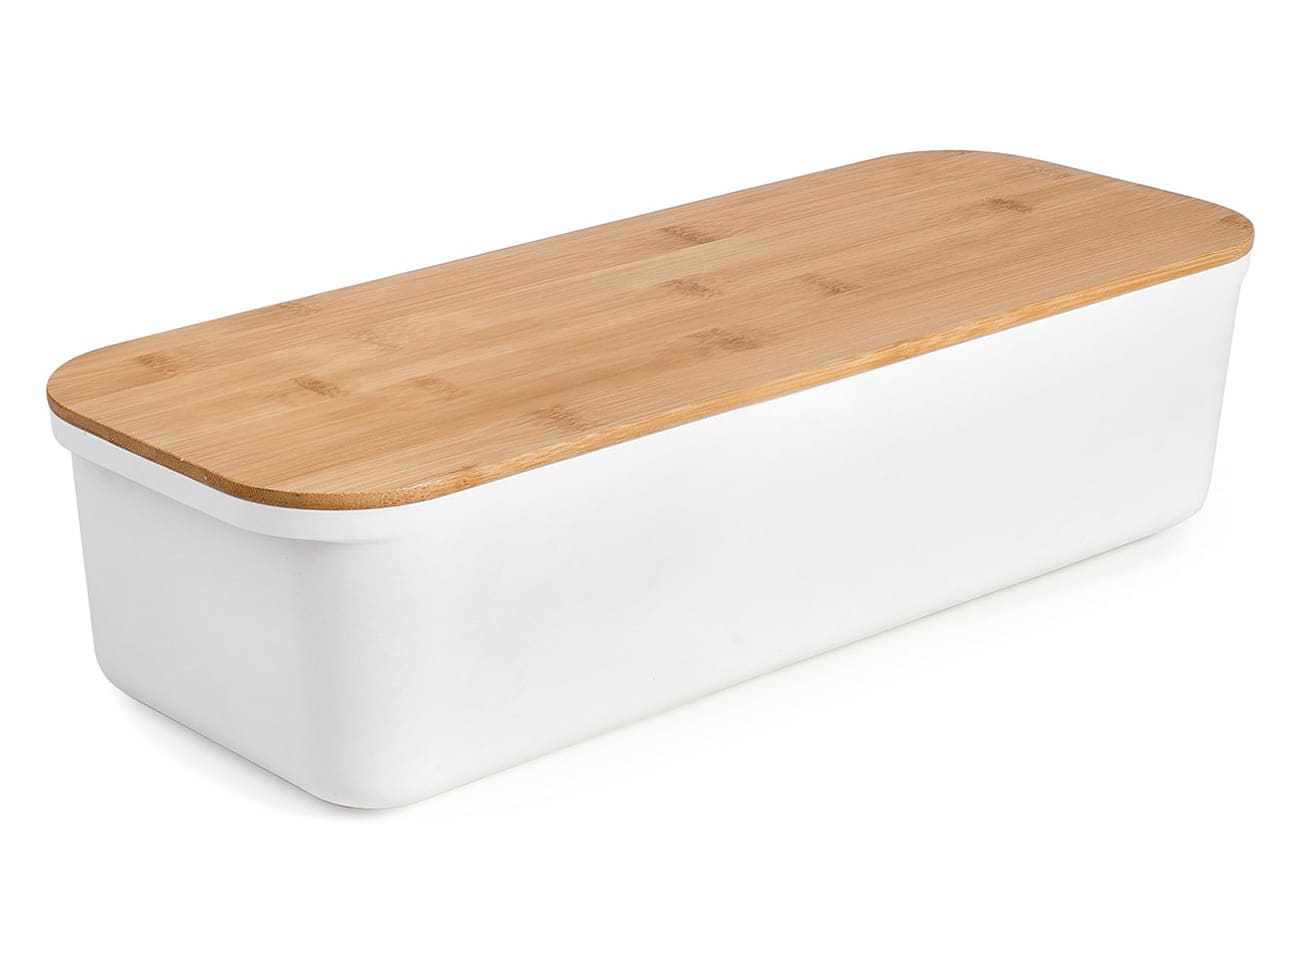 Boîte à pain en plastique blanche et couvercle bambou 24x37x14cm